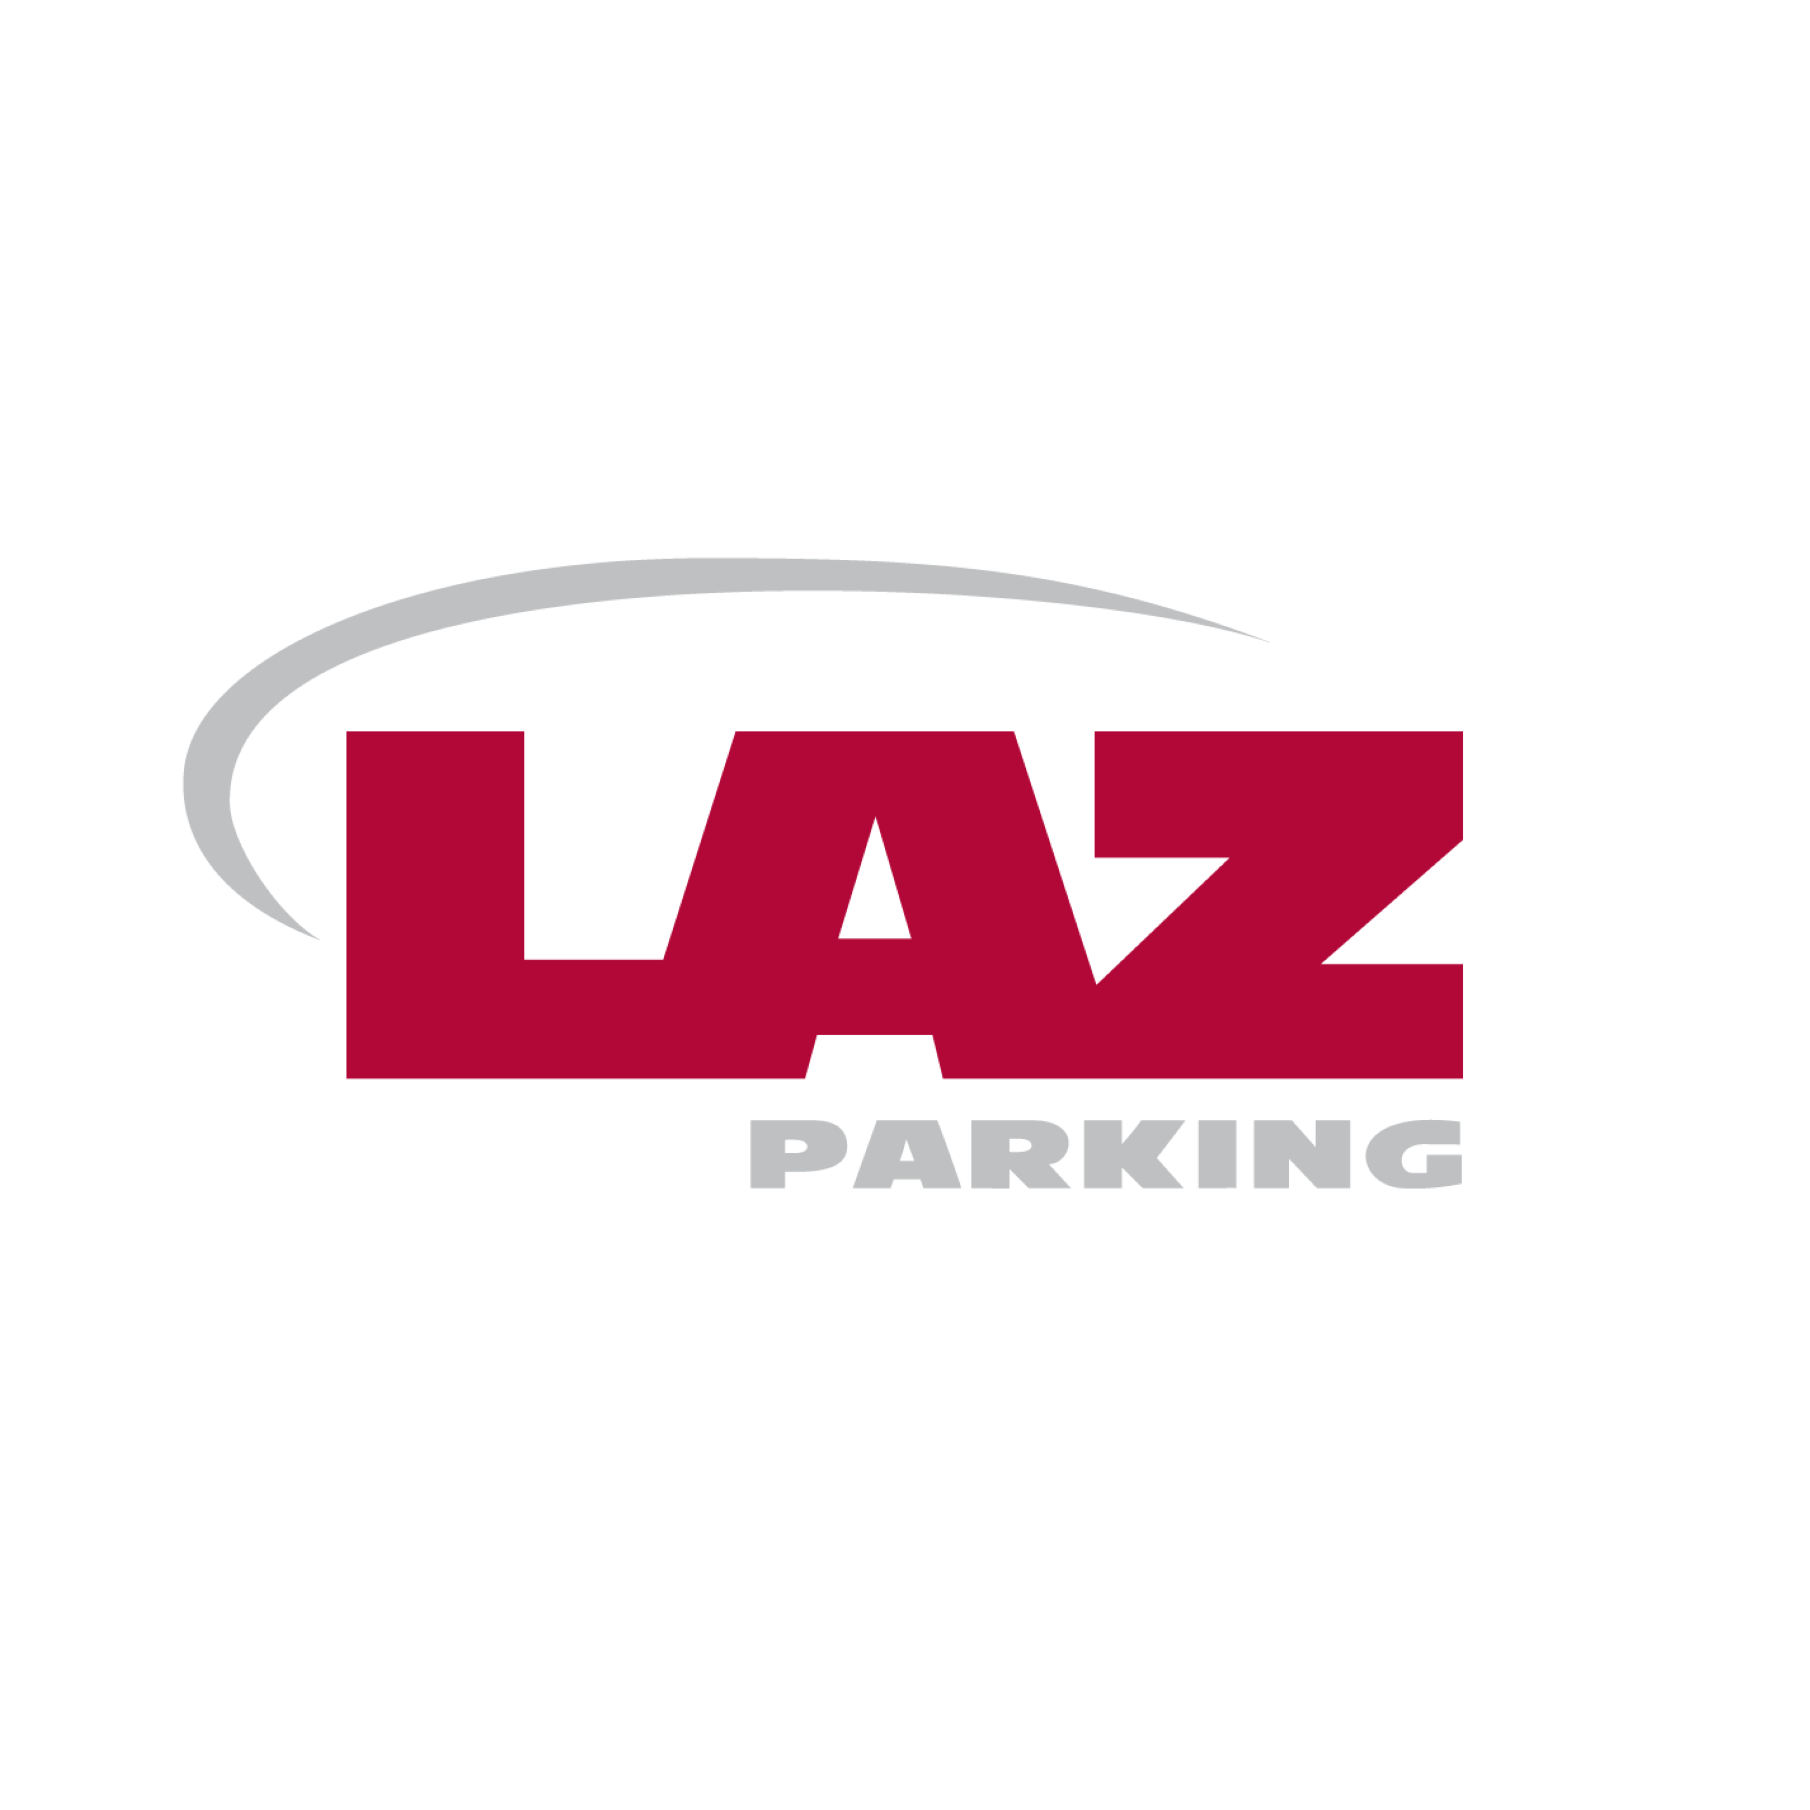 LAZ Parking